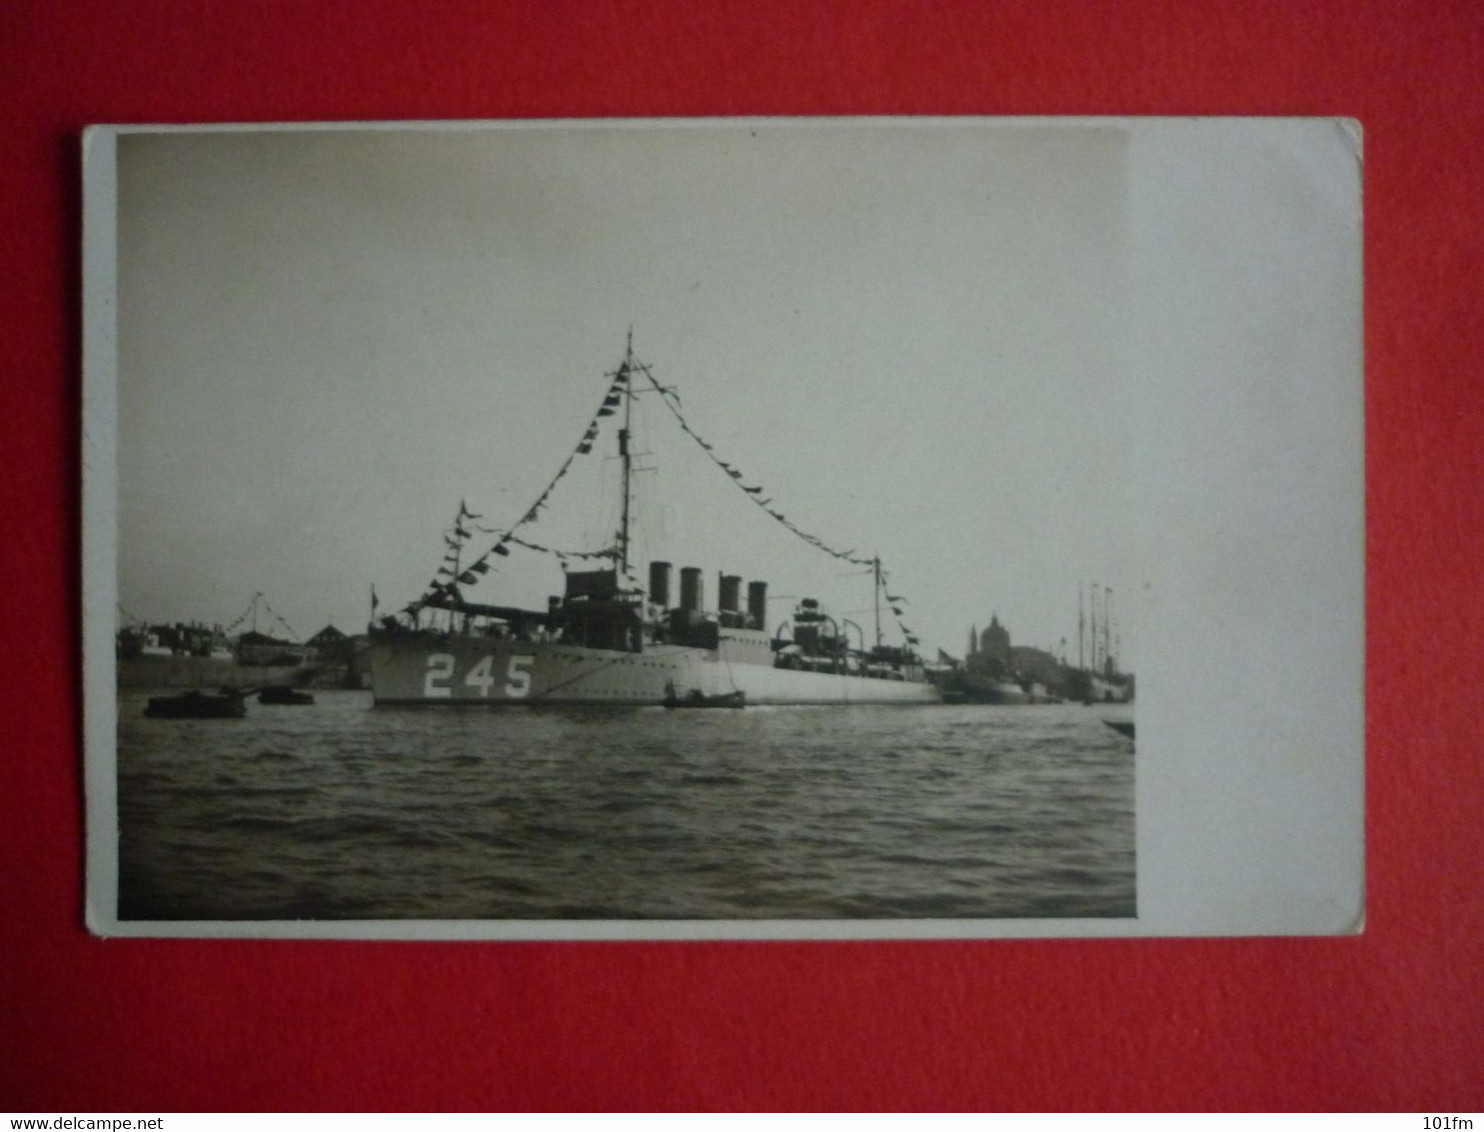 ITALY , USS REUBEN JAMES IN VENEZIA , EARLY 1930 - Oorlog